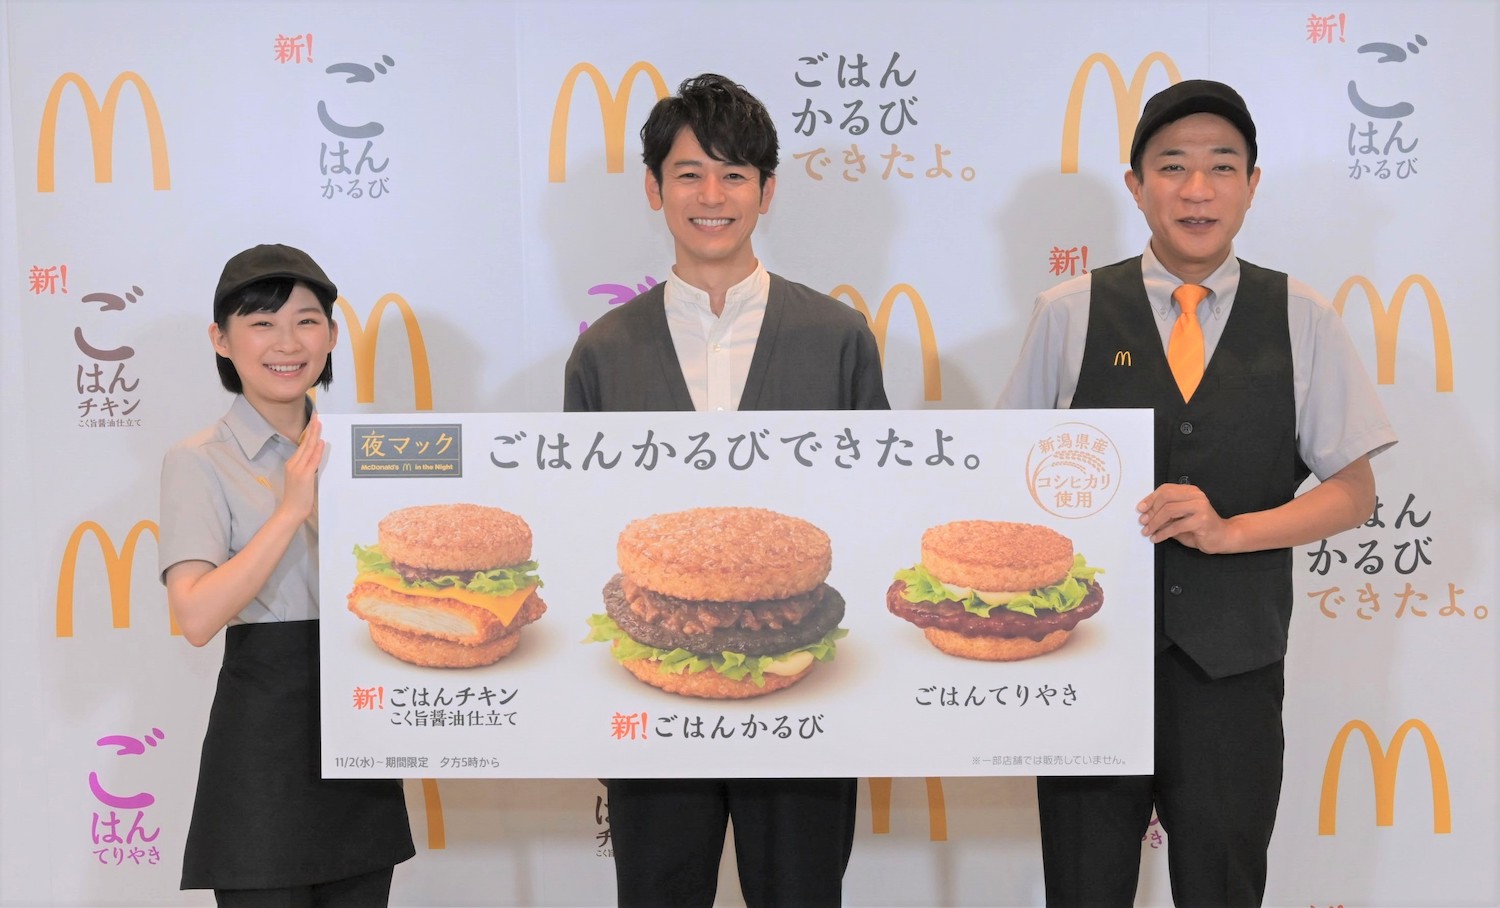 夜マック「ごはんバーガー」新商品発表イベントにて左から伊藤沙莉、妻夫木聡、塙宣之